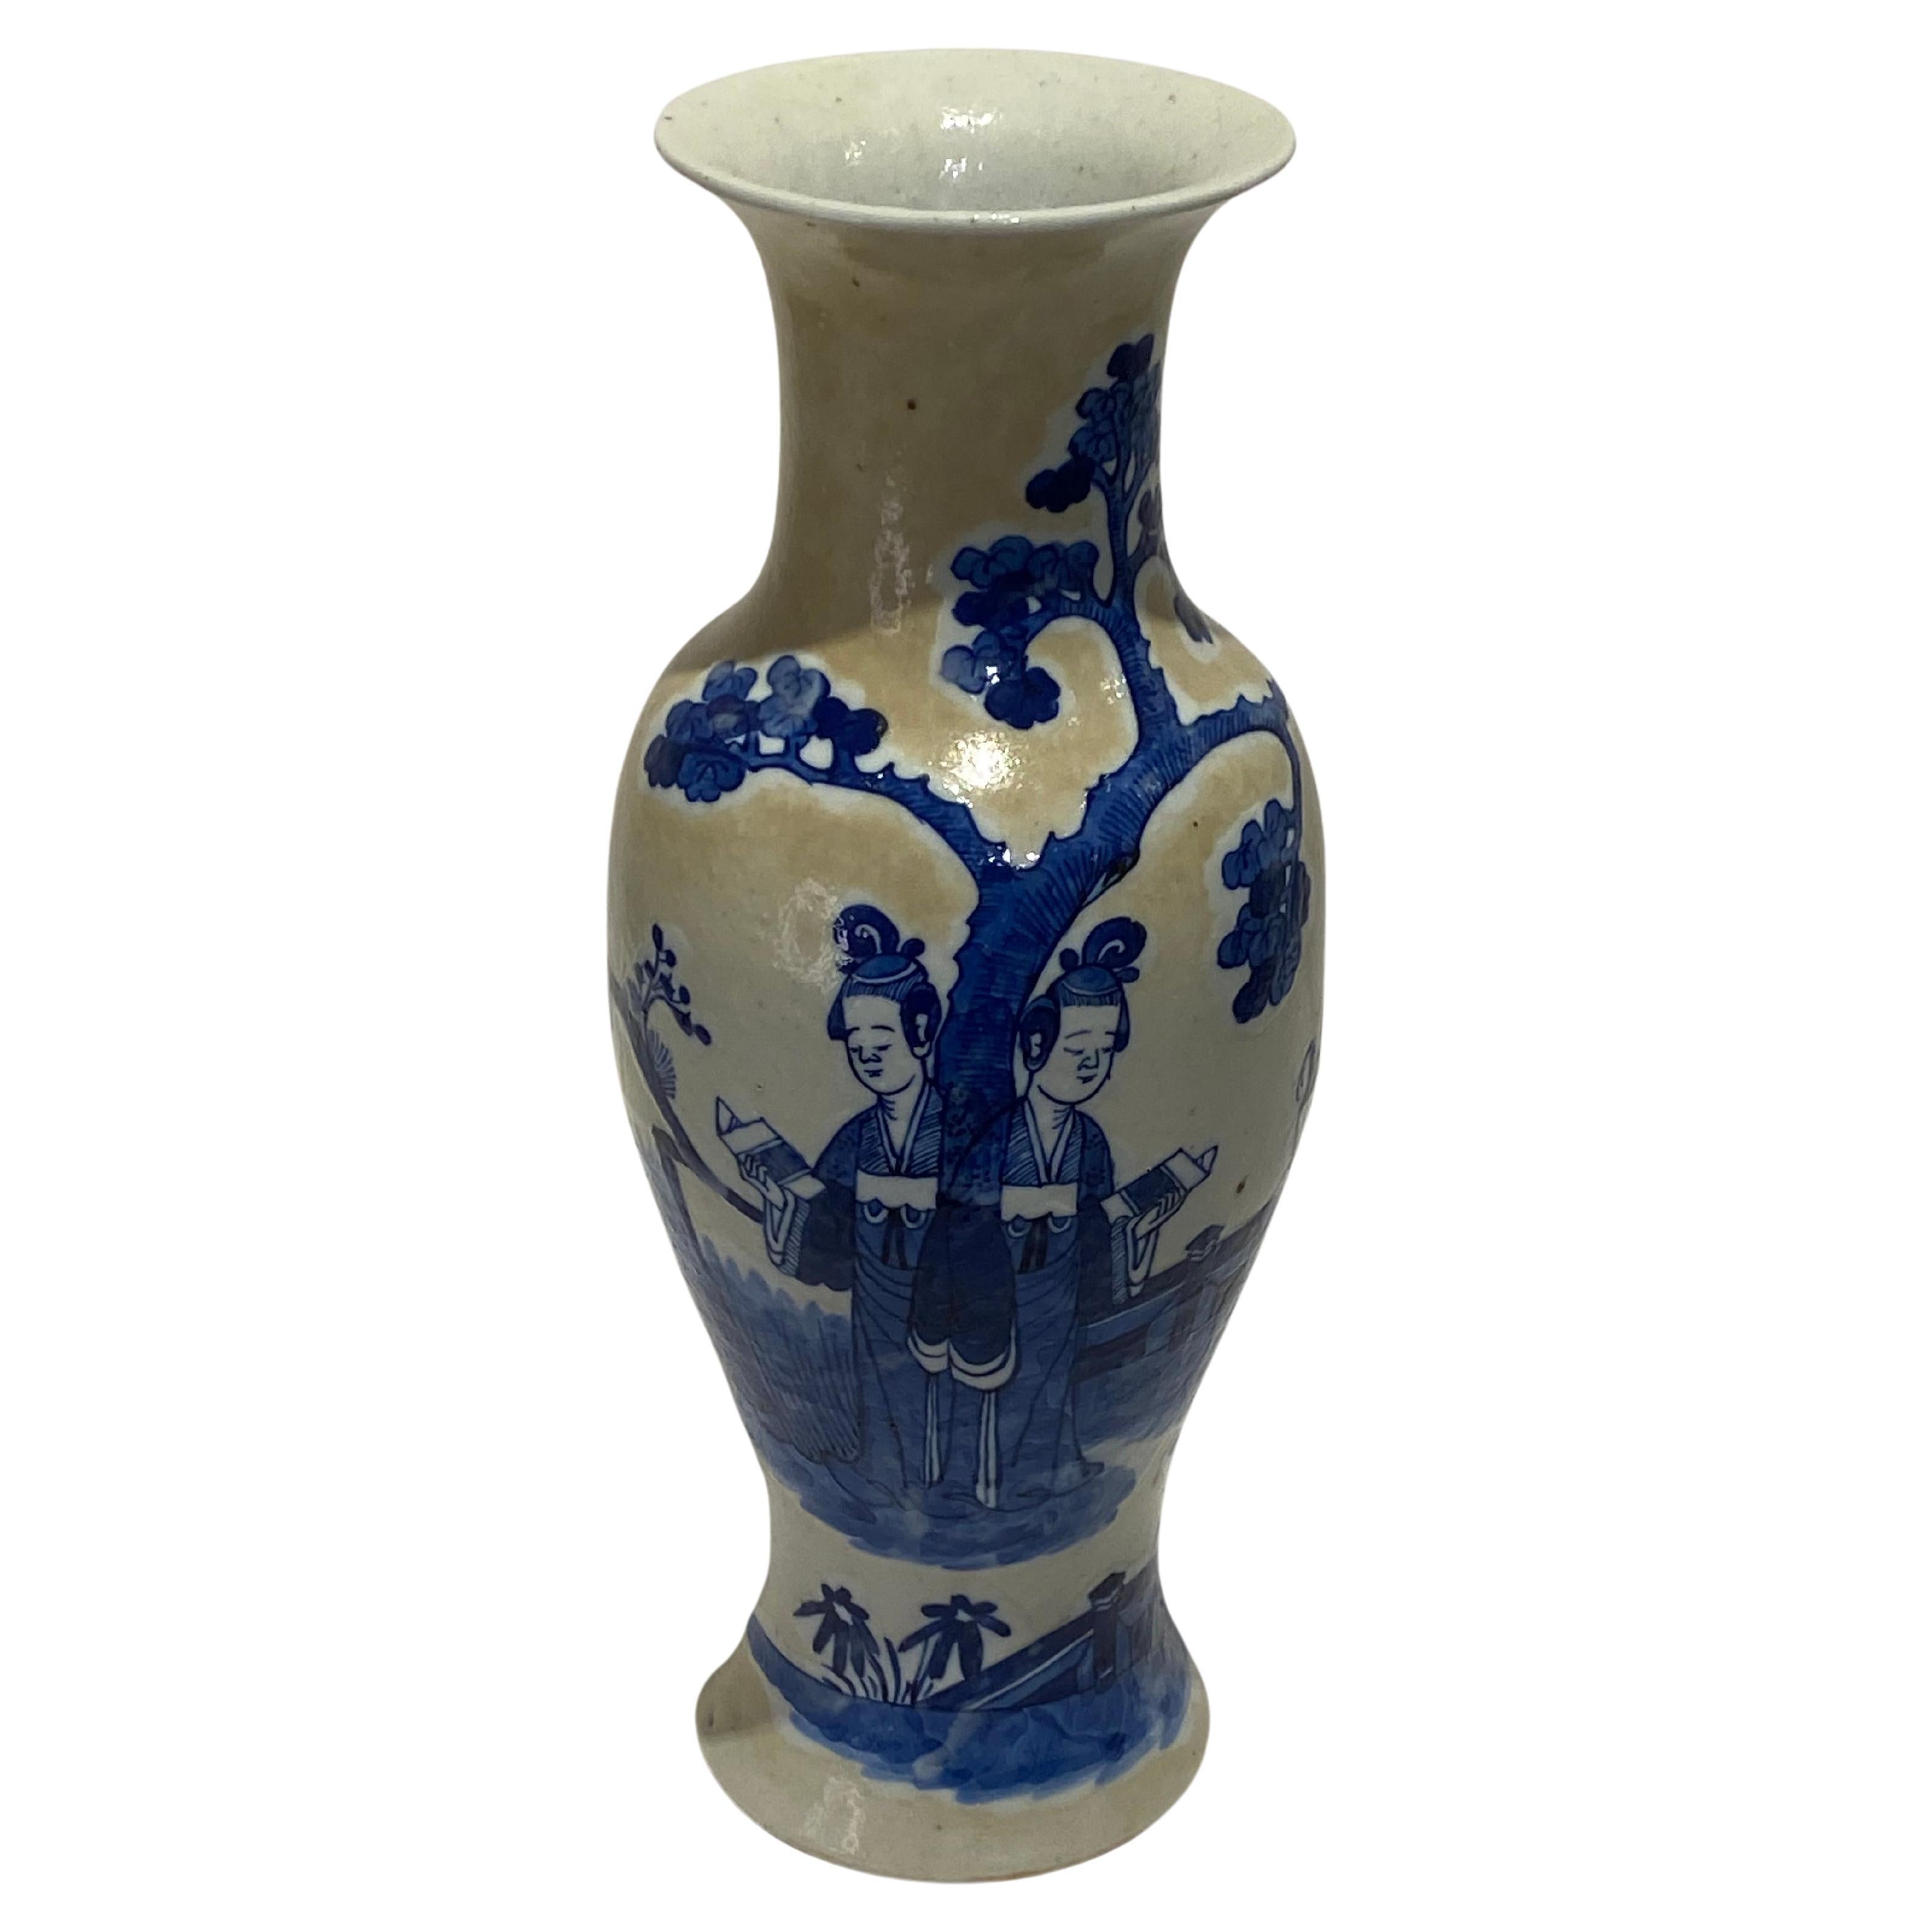 Grand vase chinois bleu et blanc du 19e siècle